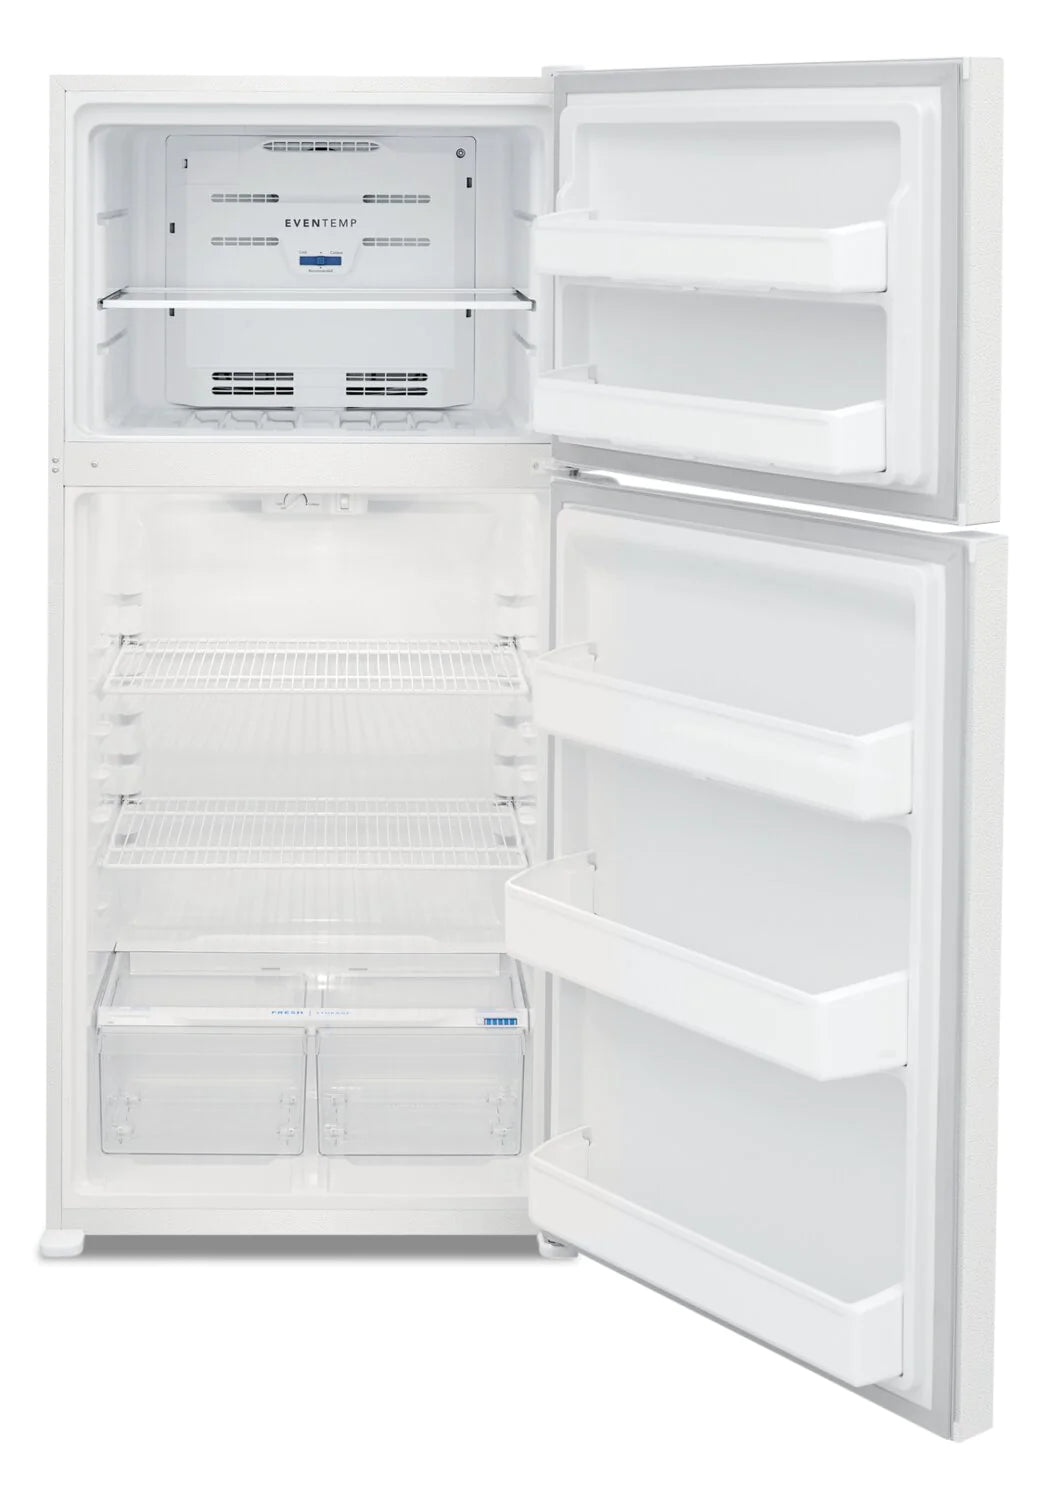 Frigidaire Refrigerator 30" White FFTR1814WW